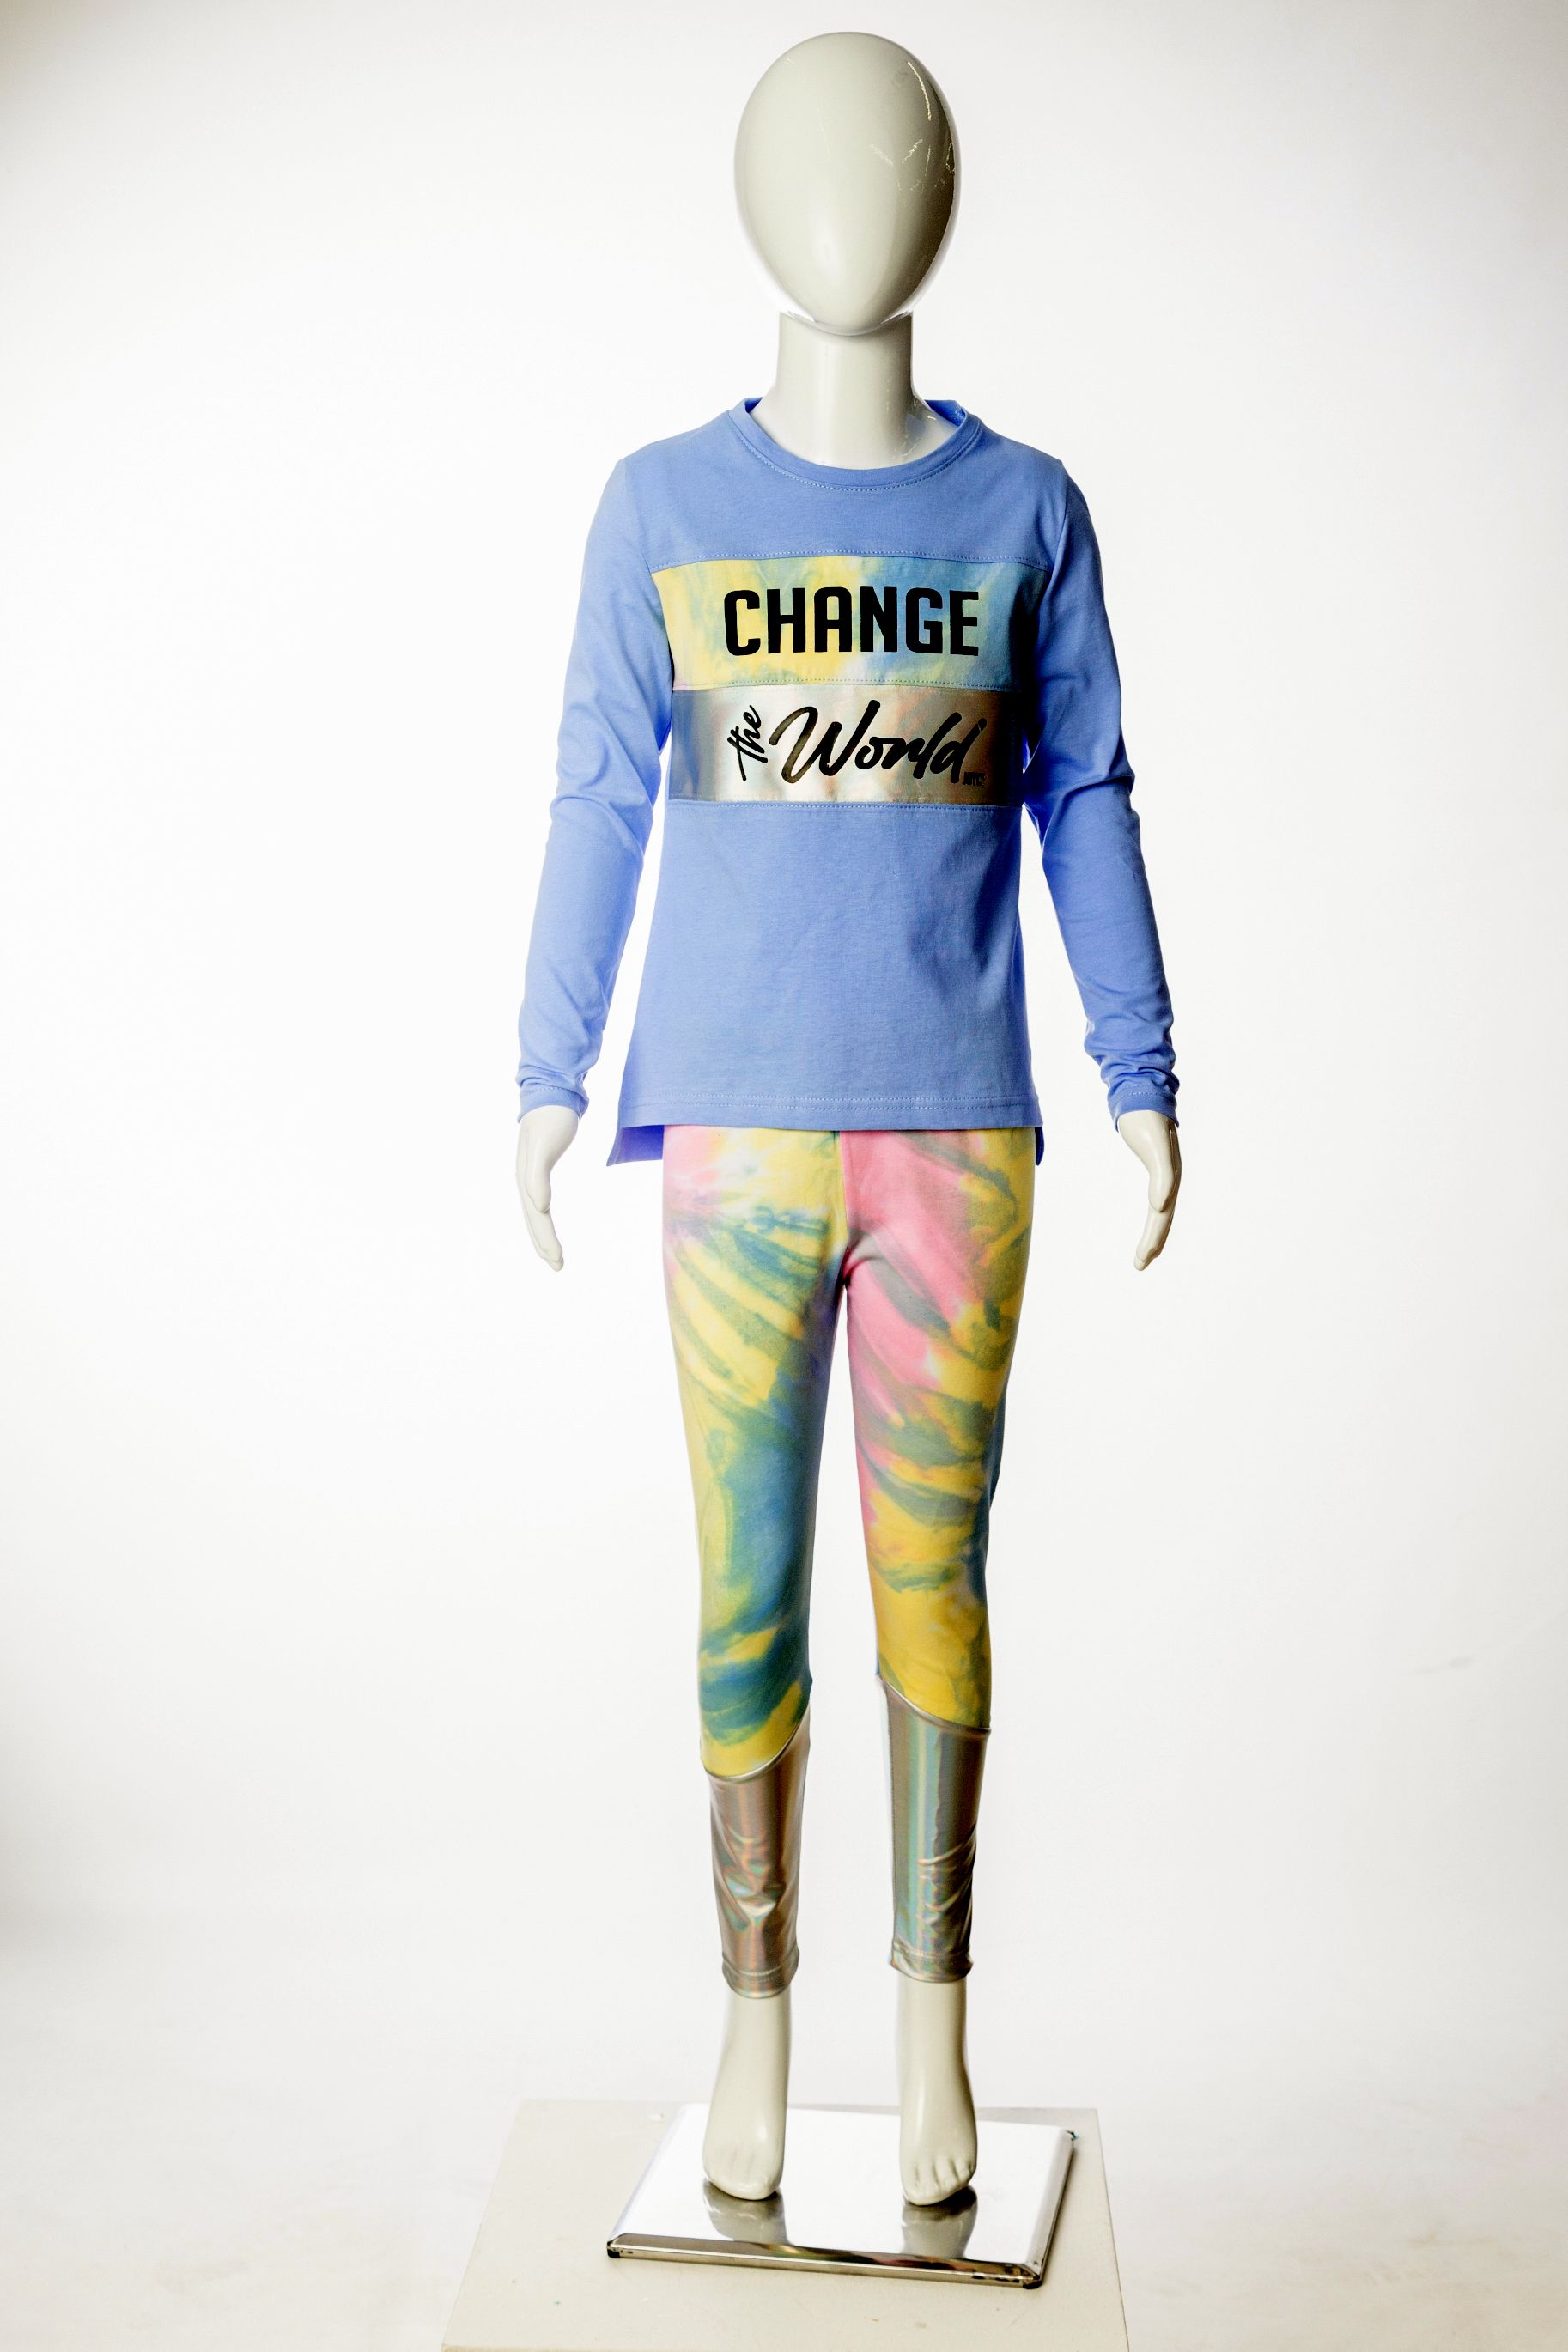 Dívčí souprava s legínami a tričkem "CHANGE THE WORLD"/Fialová, bílá Barva: Fialová, Velikost: vel. 6 (114/120 cm)